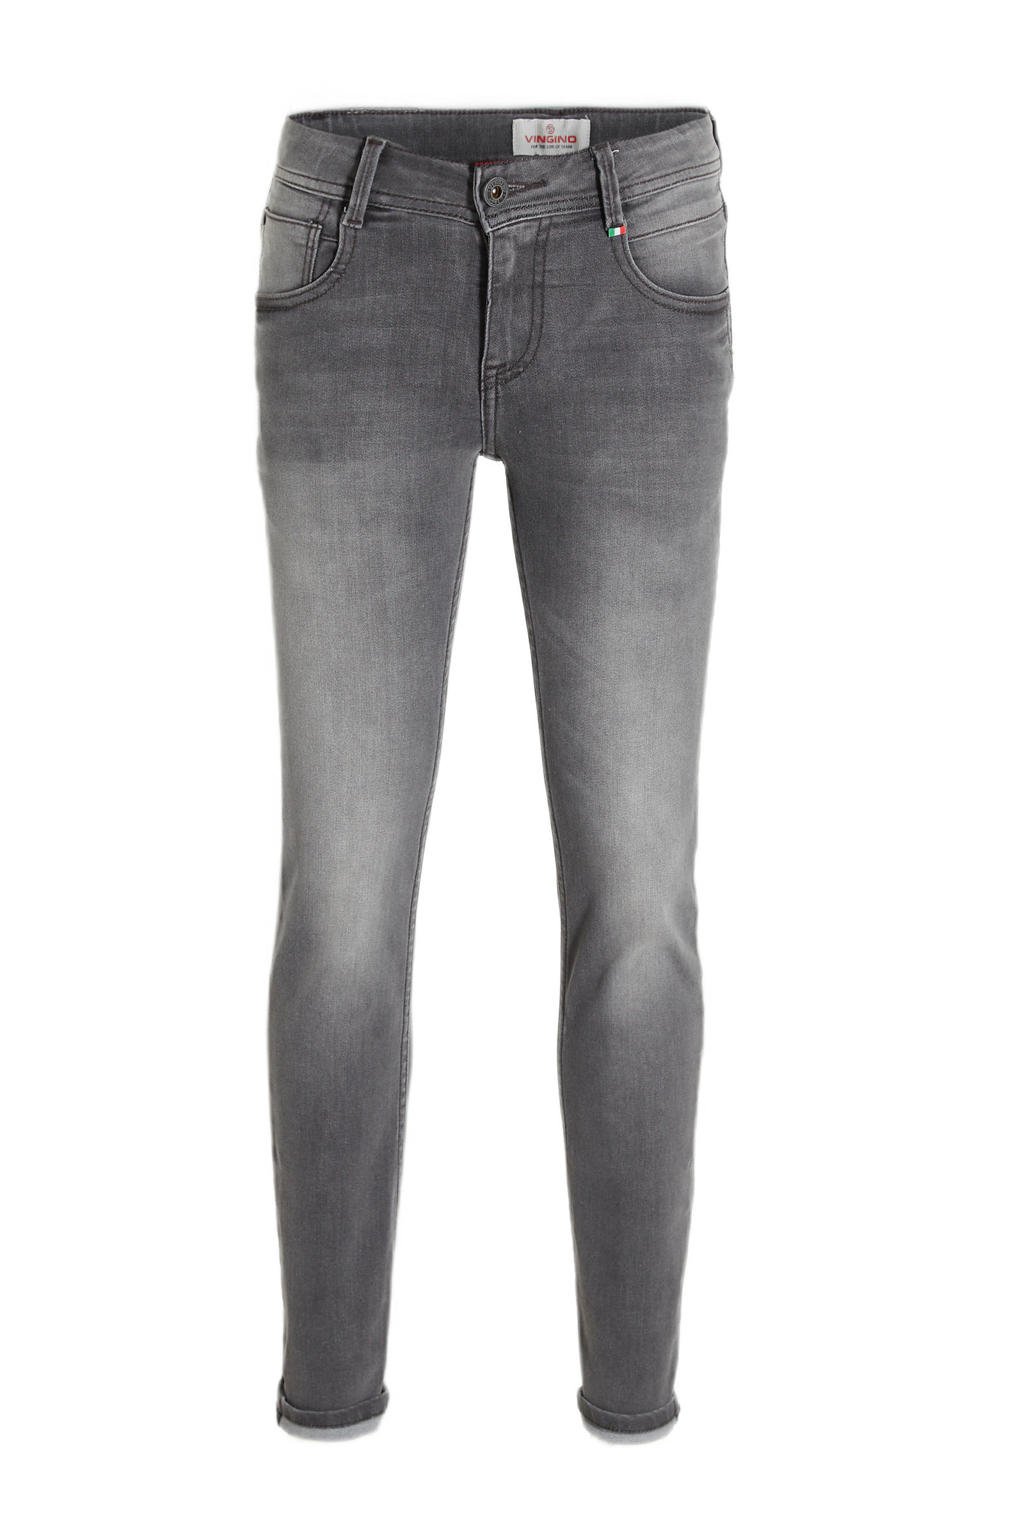 Grey denim jongens Vingino slim fit jeans Danny vintage van katoen met regular waist